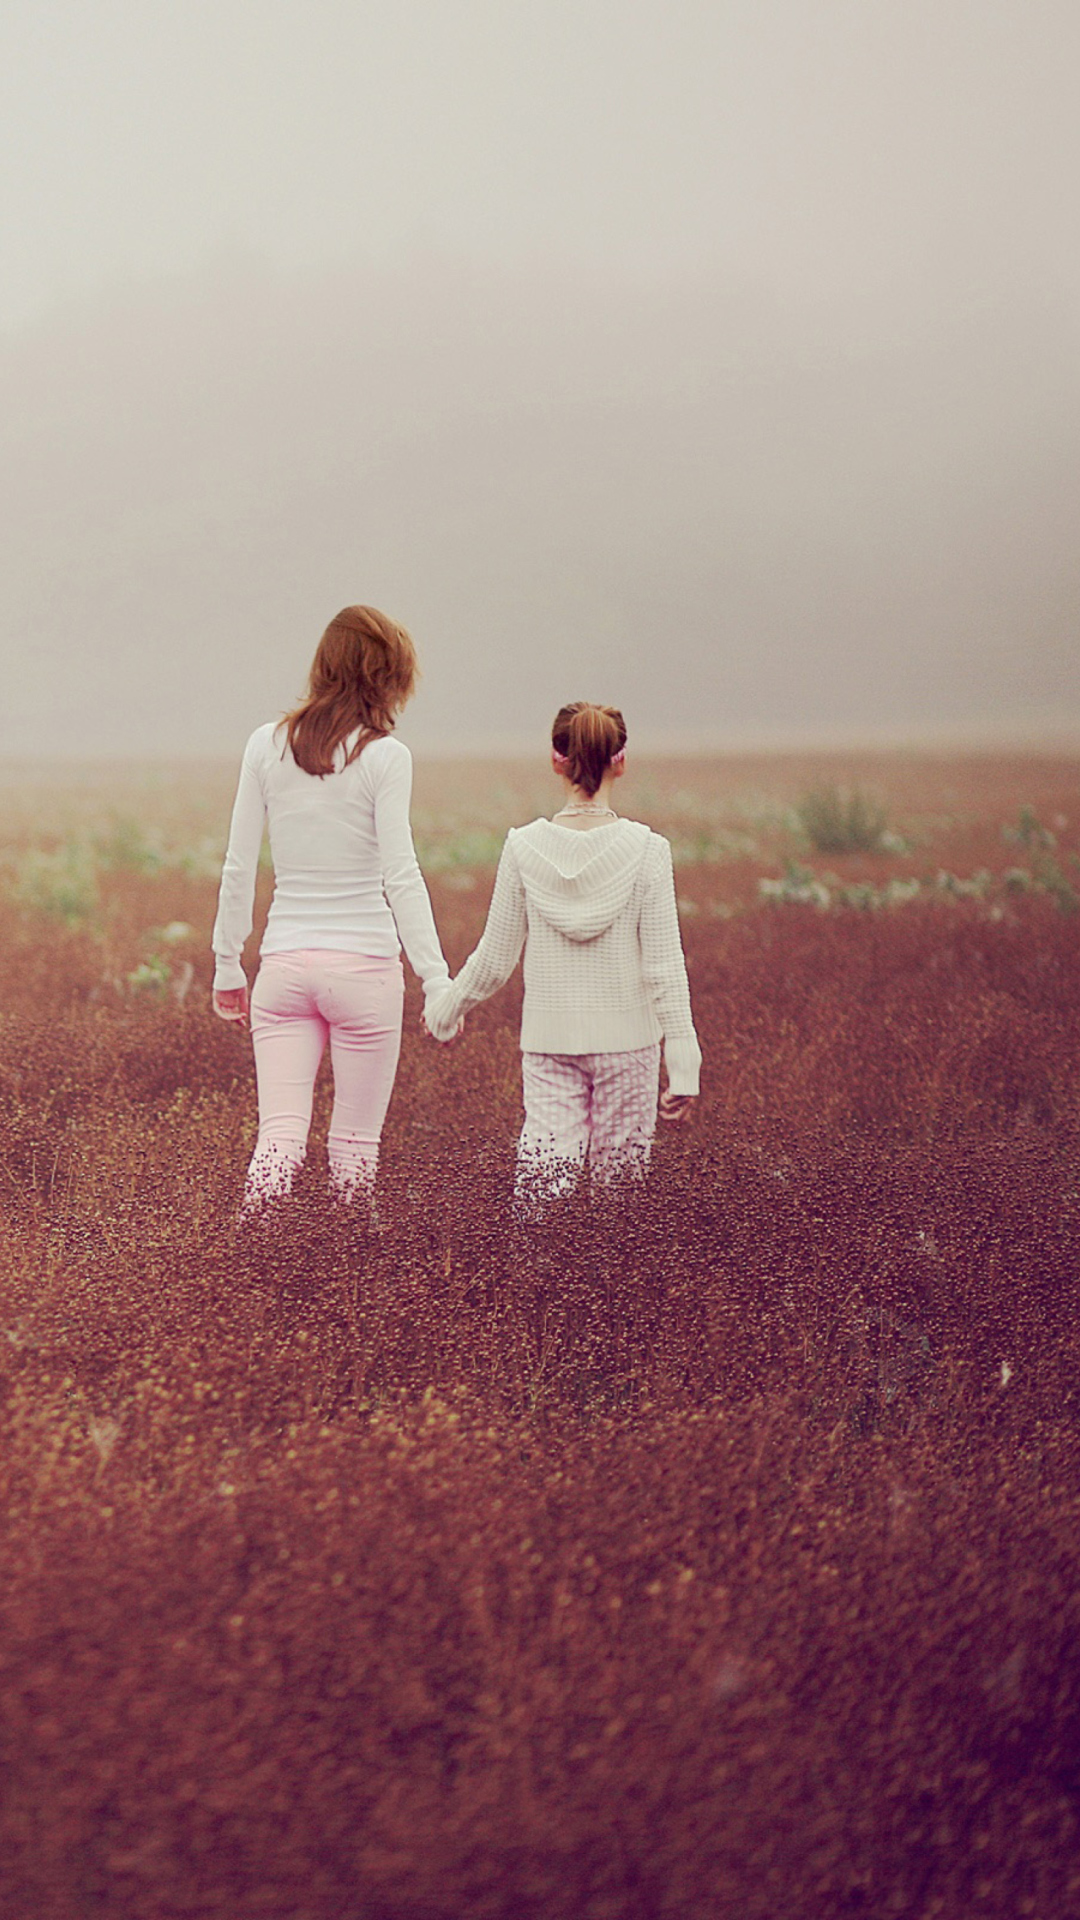 Two Girls Walking In The Field wallpaper 1080x1920